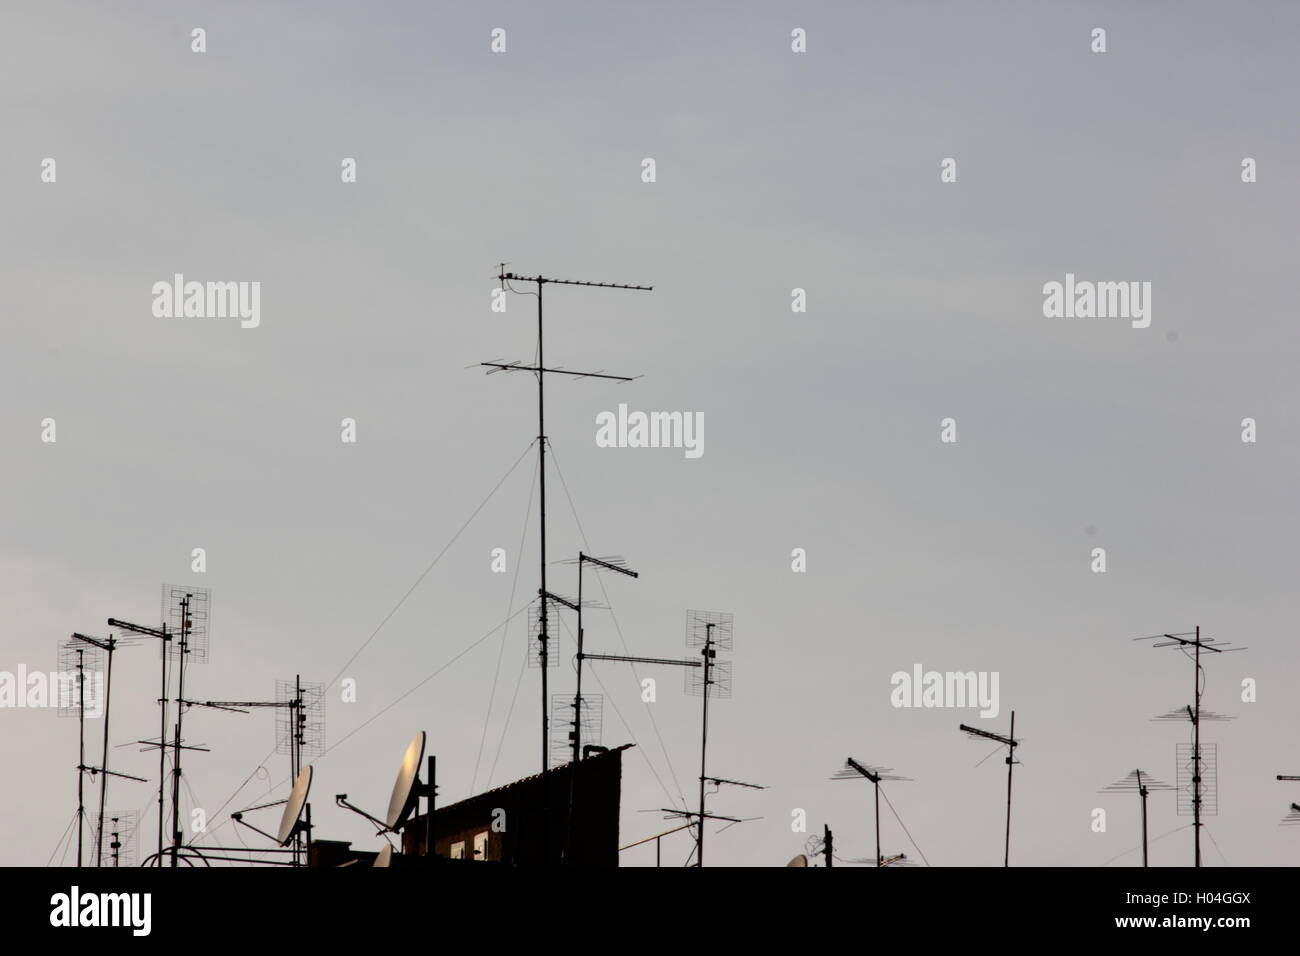 Antennes, antennes de télévision et paraboles sur toit avec ciel bleu clair Banque D'Images